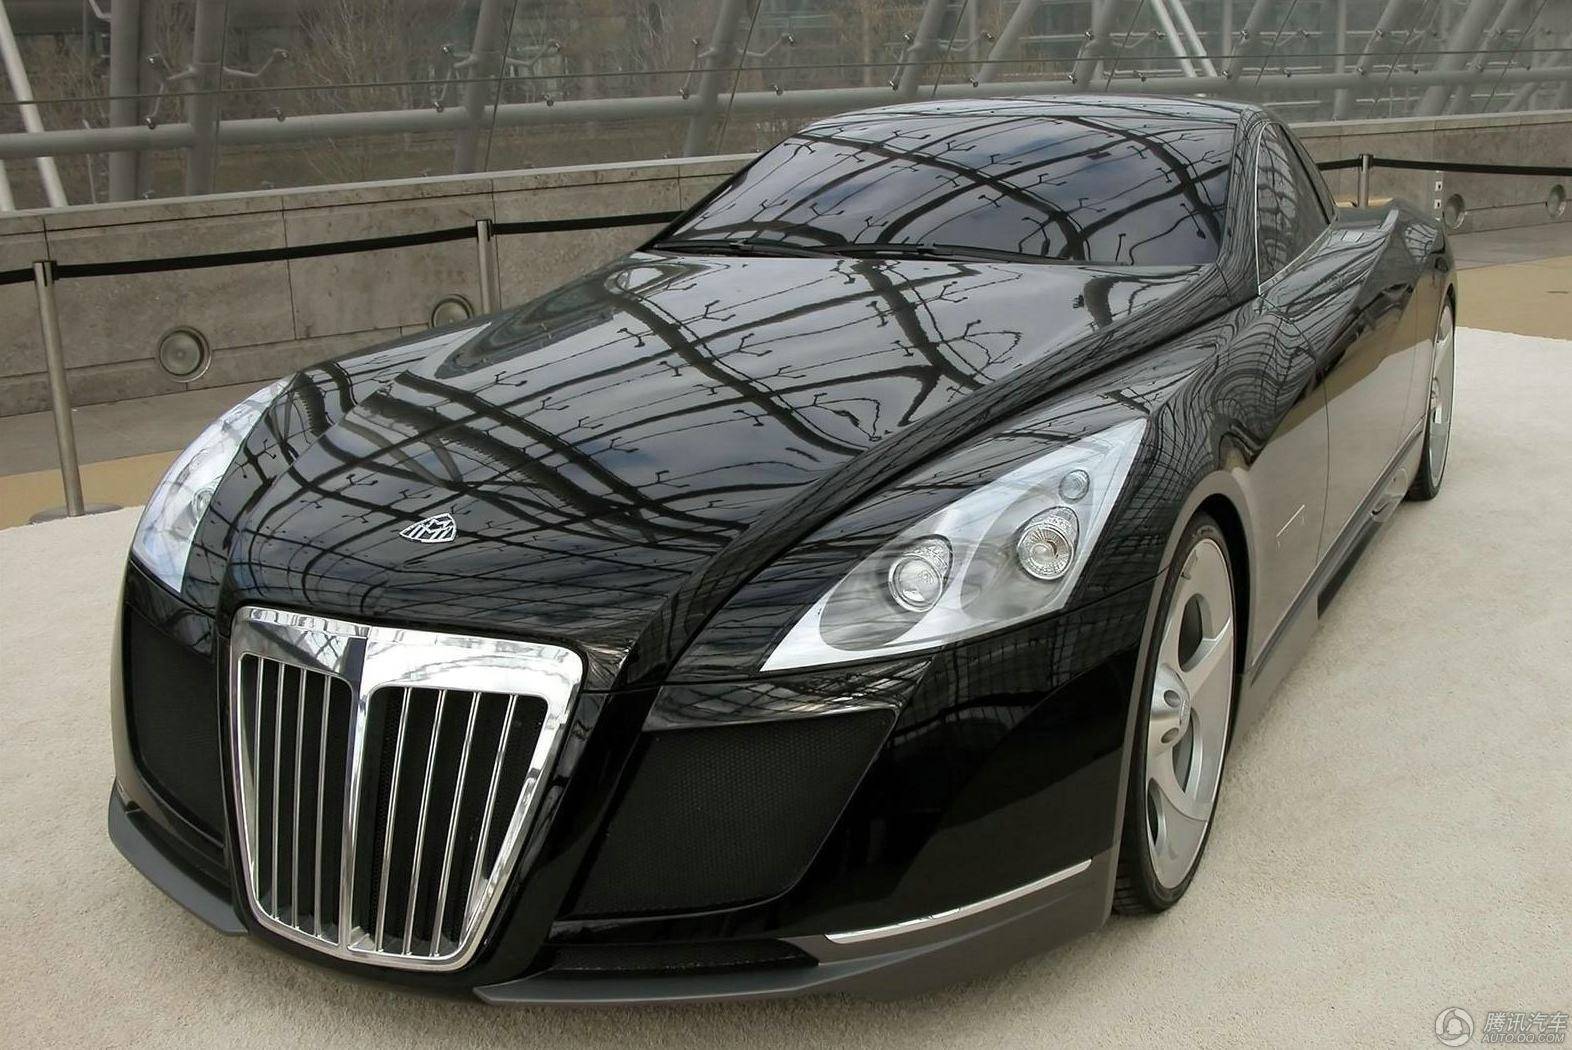 是劳斯莱斯幻影(参数|图片)总统定制版,这款汽车售价约为4000万人民币